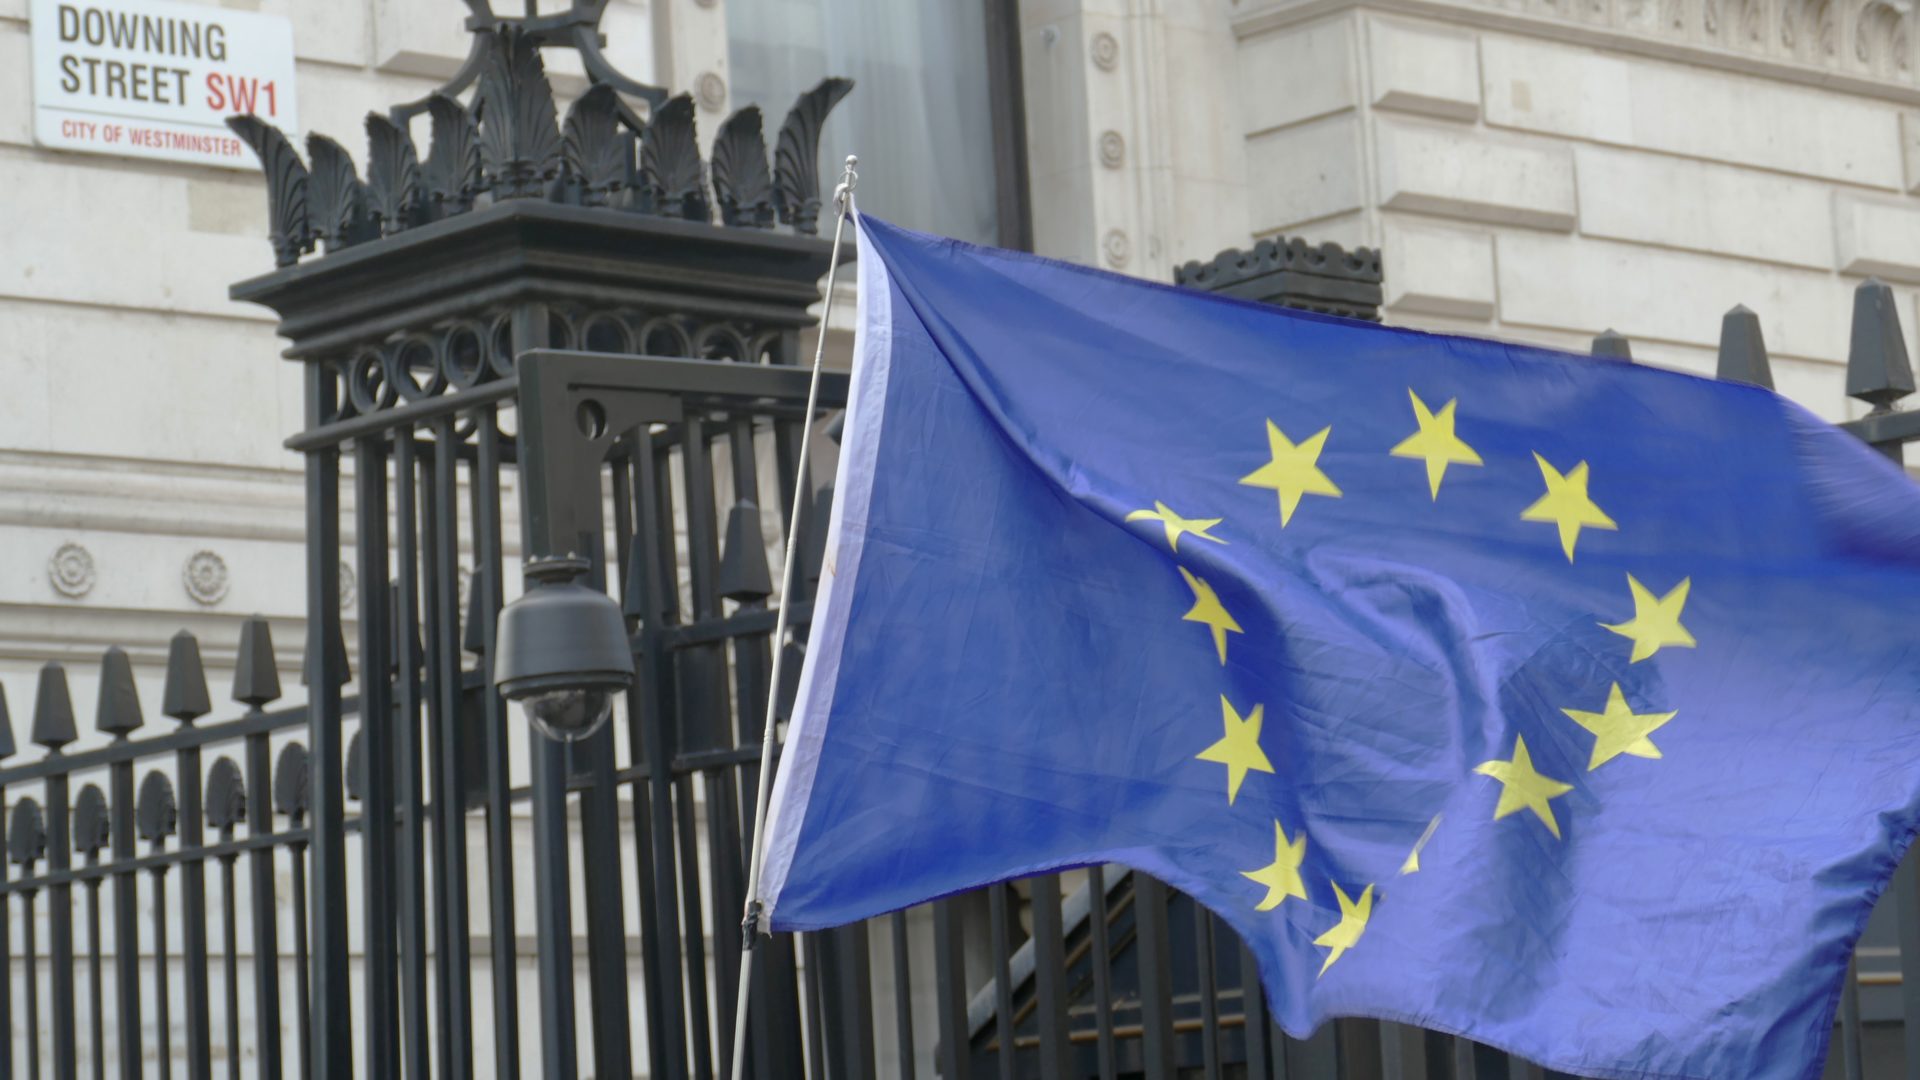 European Flag flying outside Downing Street